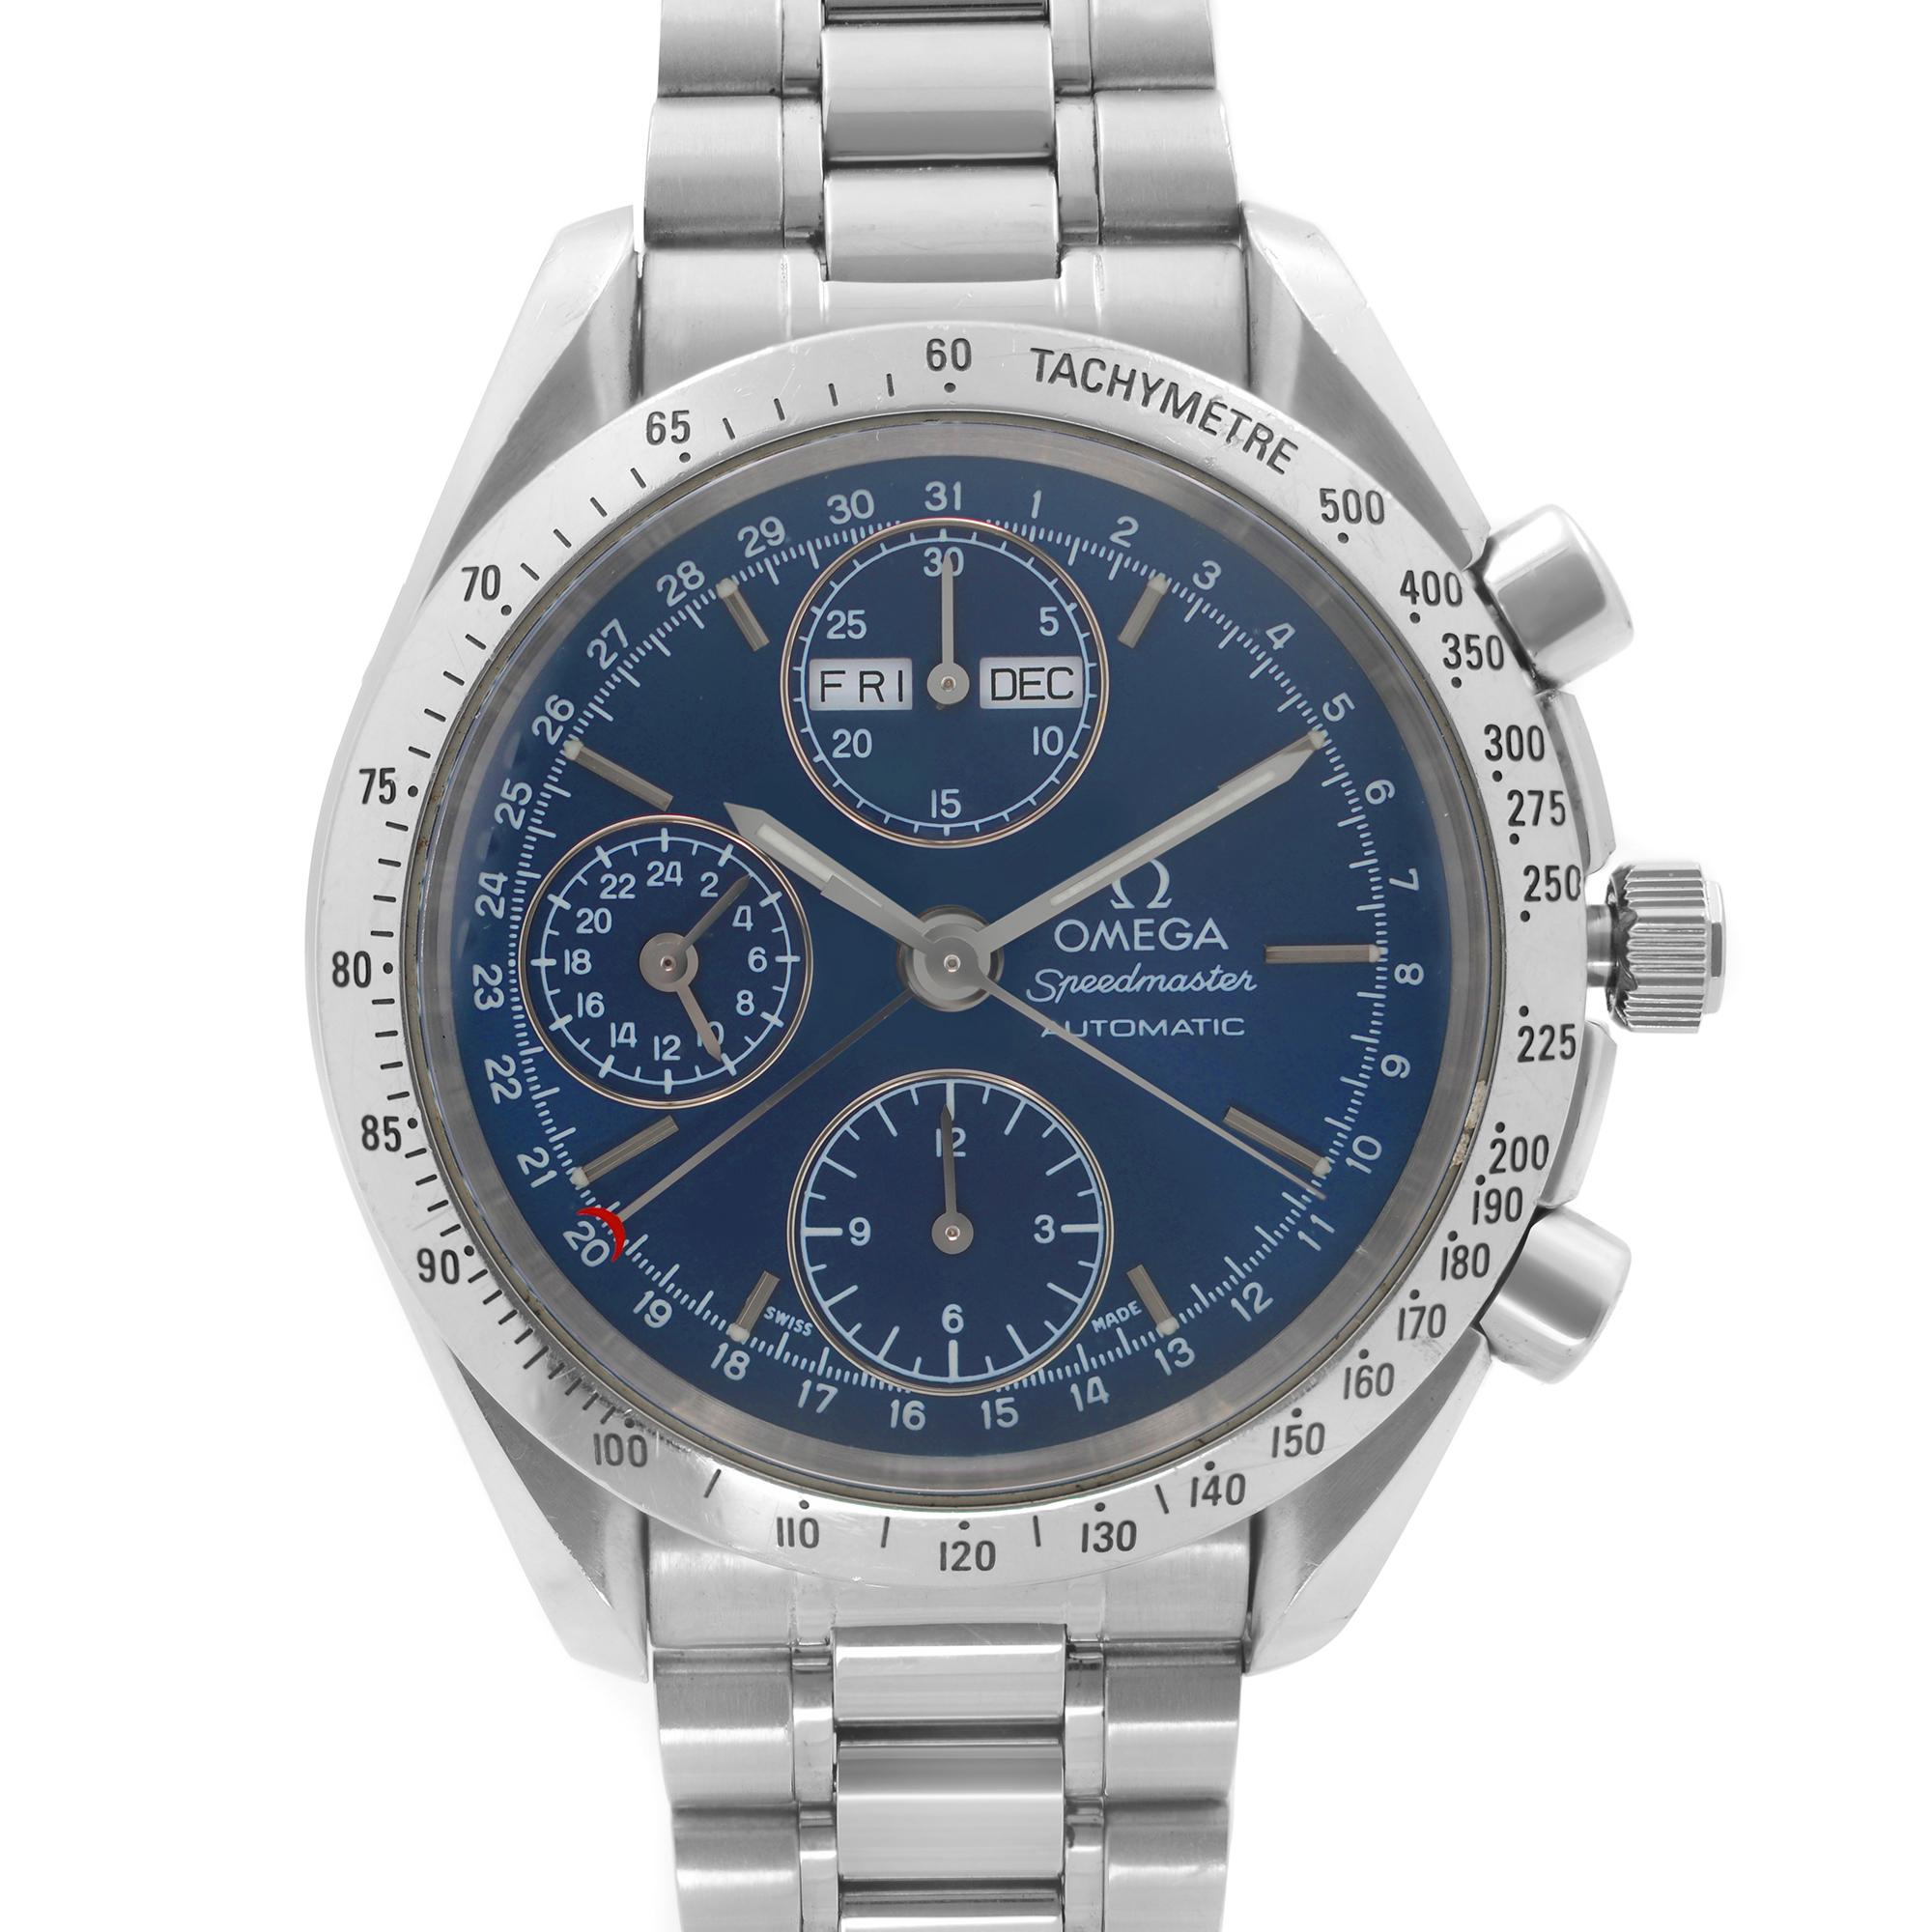 Pre Owned Omega Speedmaster Steel Chronograph Blue Dial Automatic Mens Watch 3521.80. Dieser Zeitmesser verfügt über: Edelstahl-Gehäuse und -Armband, feste Edelstahl-Lünette mit Tachymeter, blaues Zifferblatt mit silberfarbenen Lumin-Zeigern und